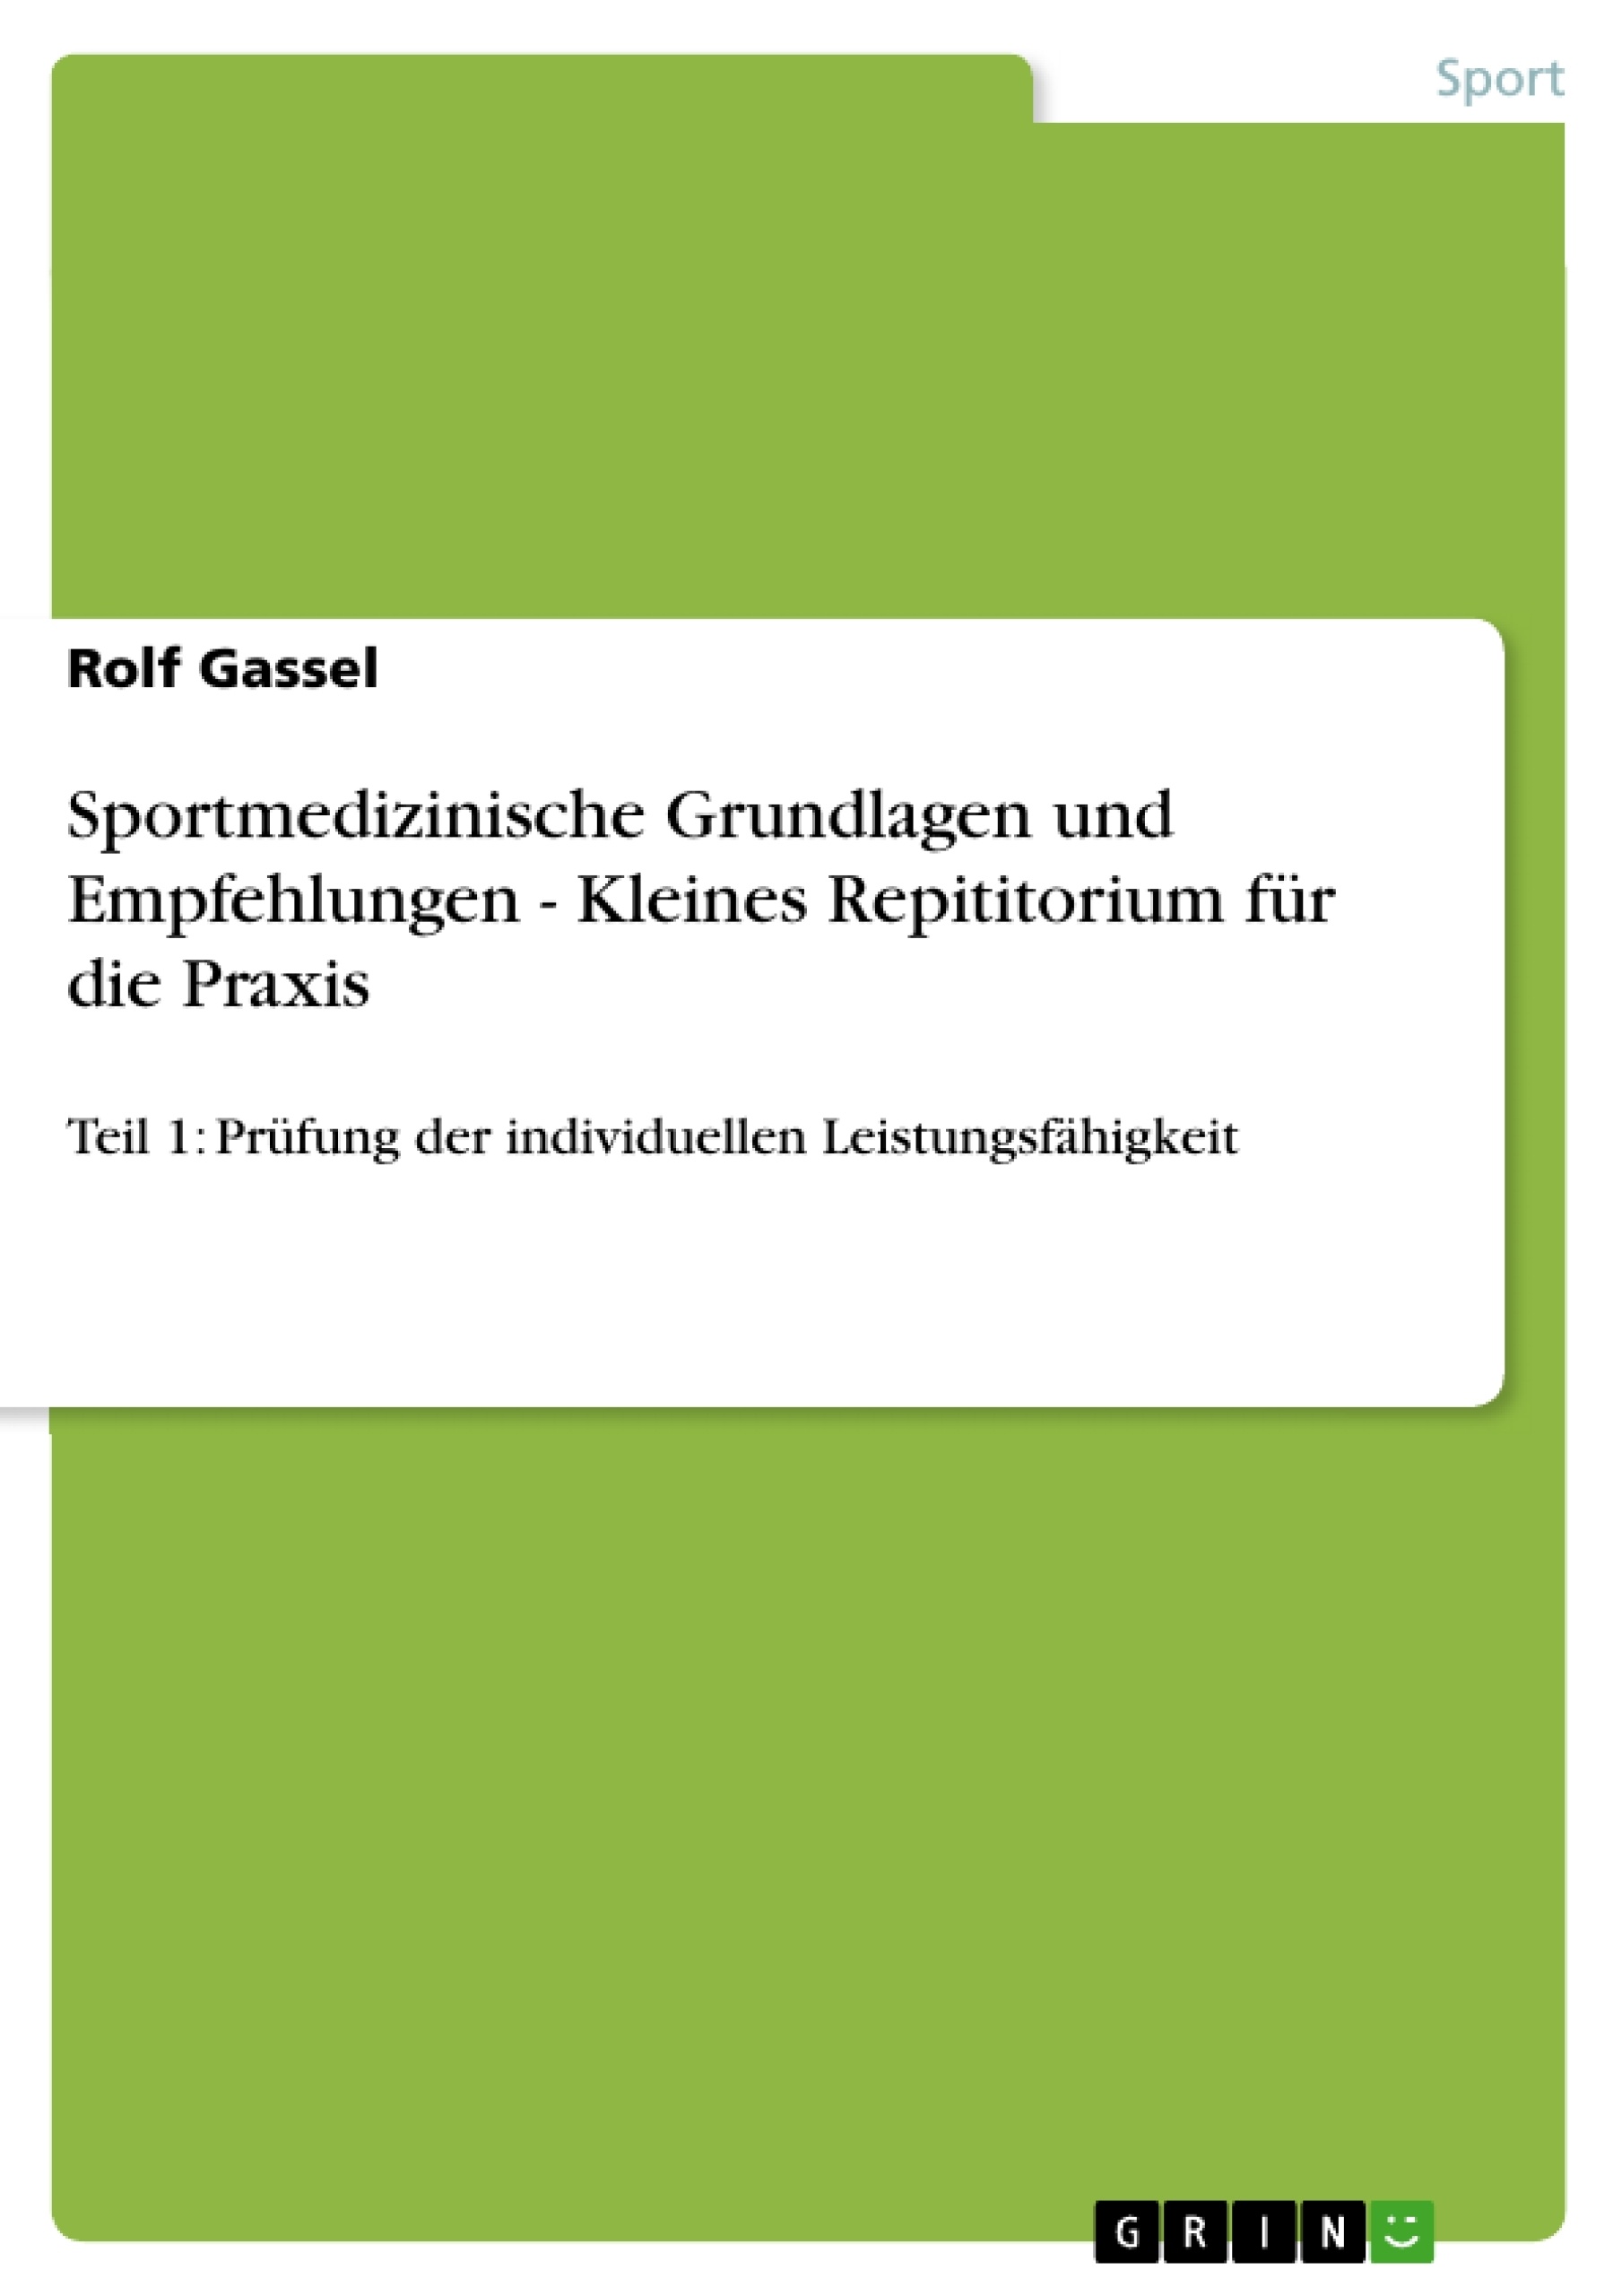 Title: Sportmedizinische Grundlagen und Empfehlungen - Kleines Repititorium für die Praxis